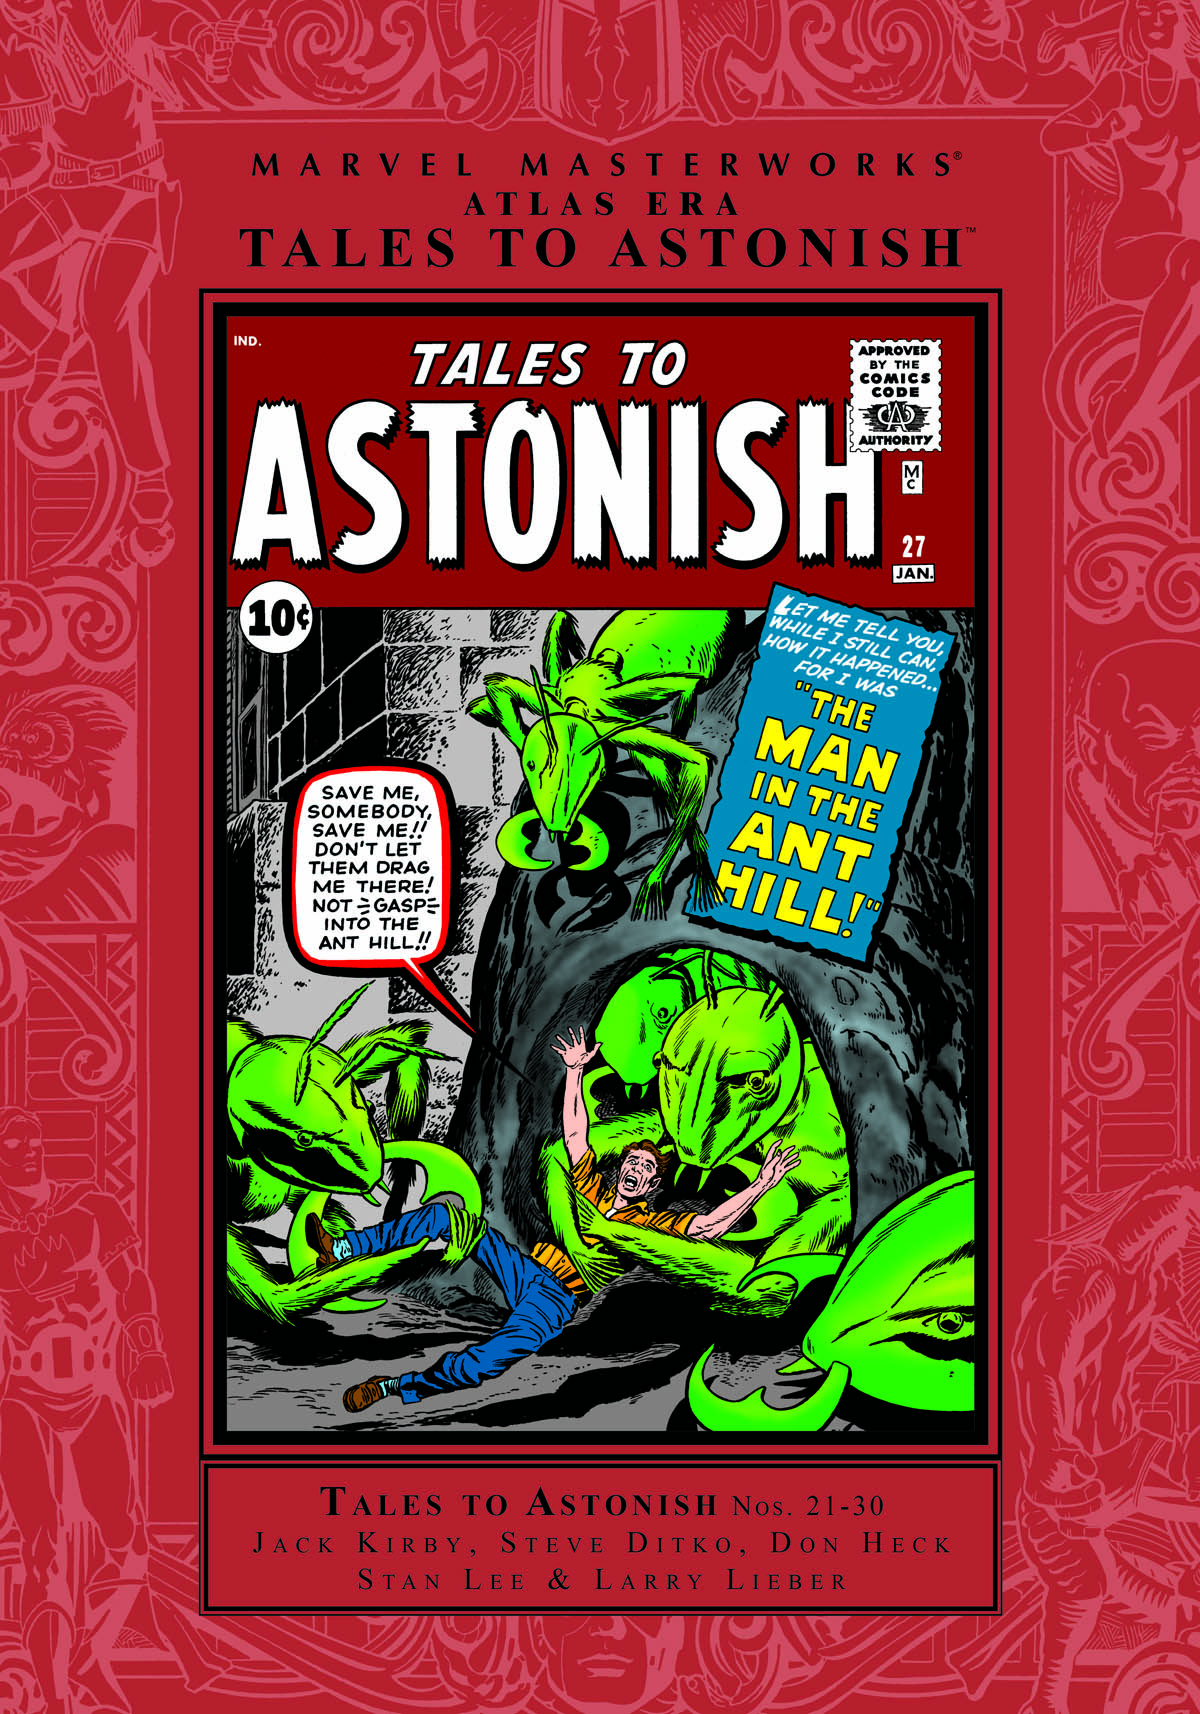 Marvel Masterworks: Atlas Era Tales to Astonish Vol. 3 (Trade Paperback)